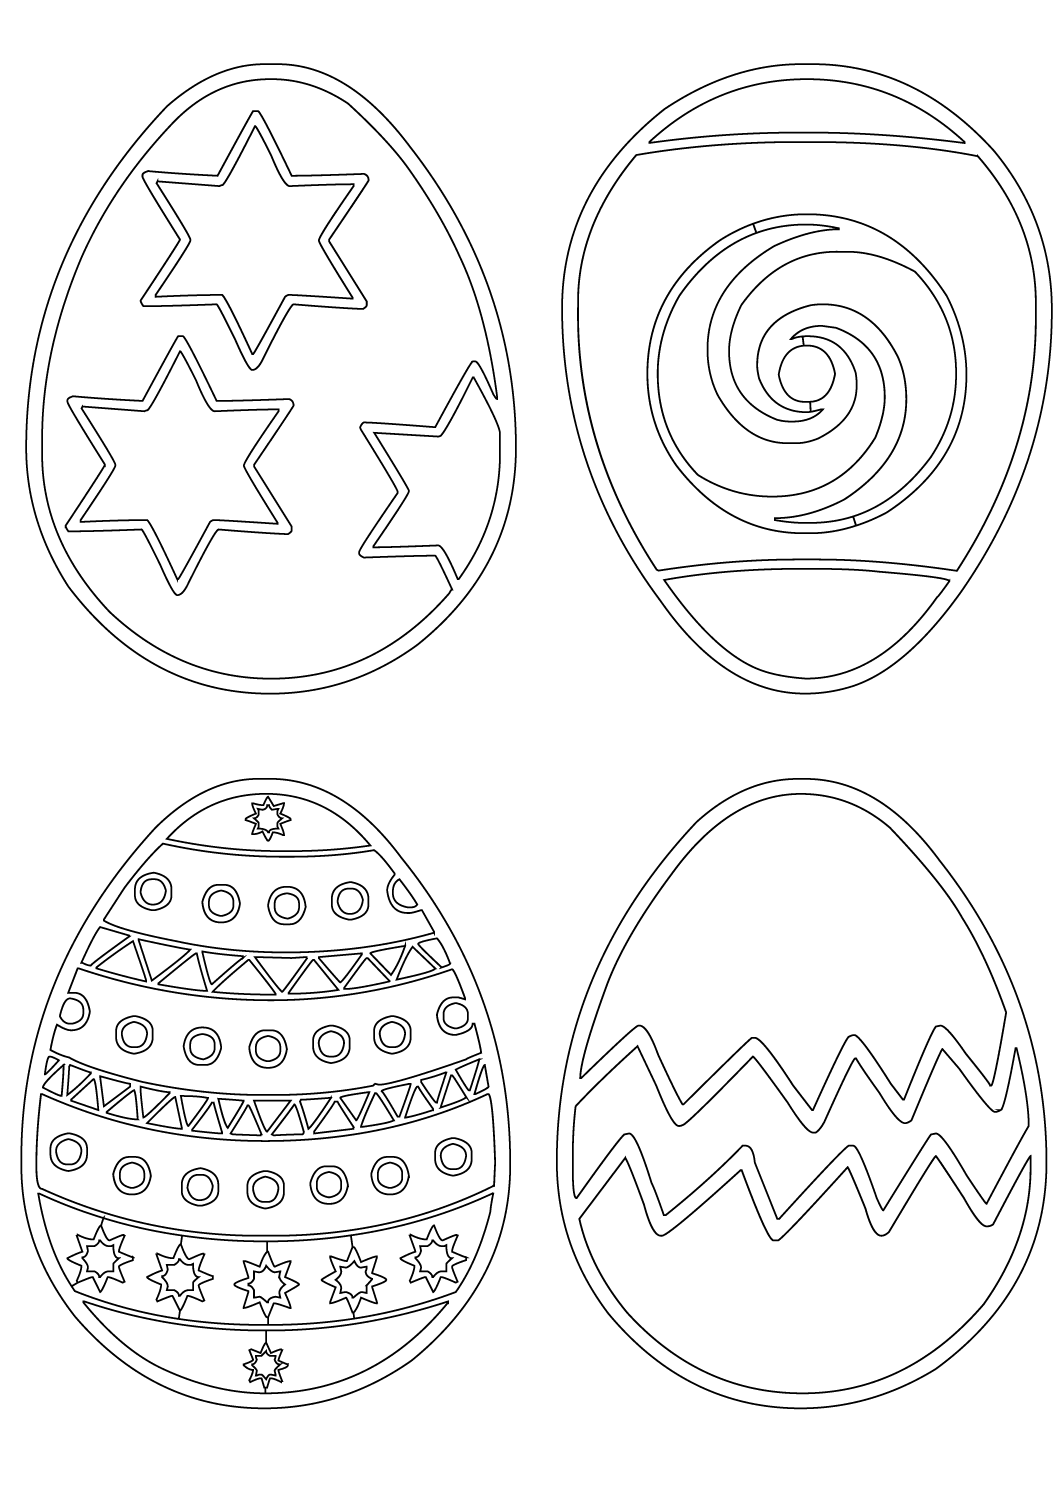 Пасхальные яйца писанки раскраски. Пасхальное яйцо раскраска шаблон. Шаблон пасхального яйца для раскрашивания. Яйцо пасхальное раскраска для детей шаблоны. Шаблон пасхального яйца для вырезания